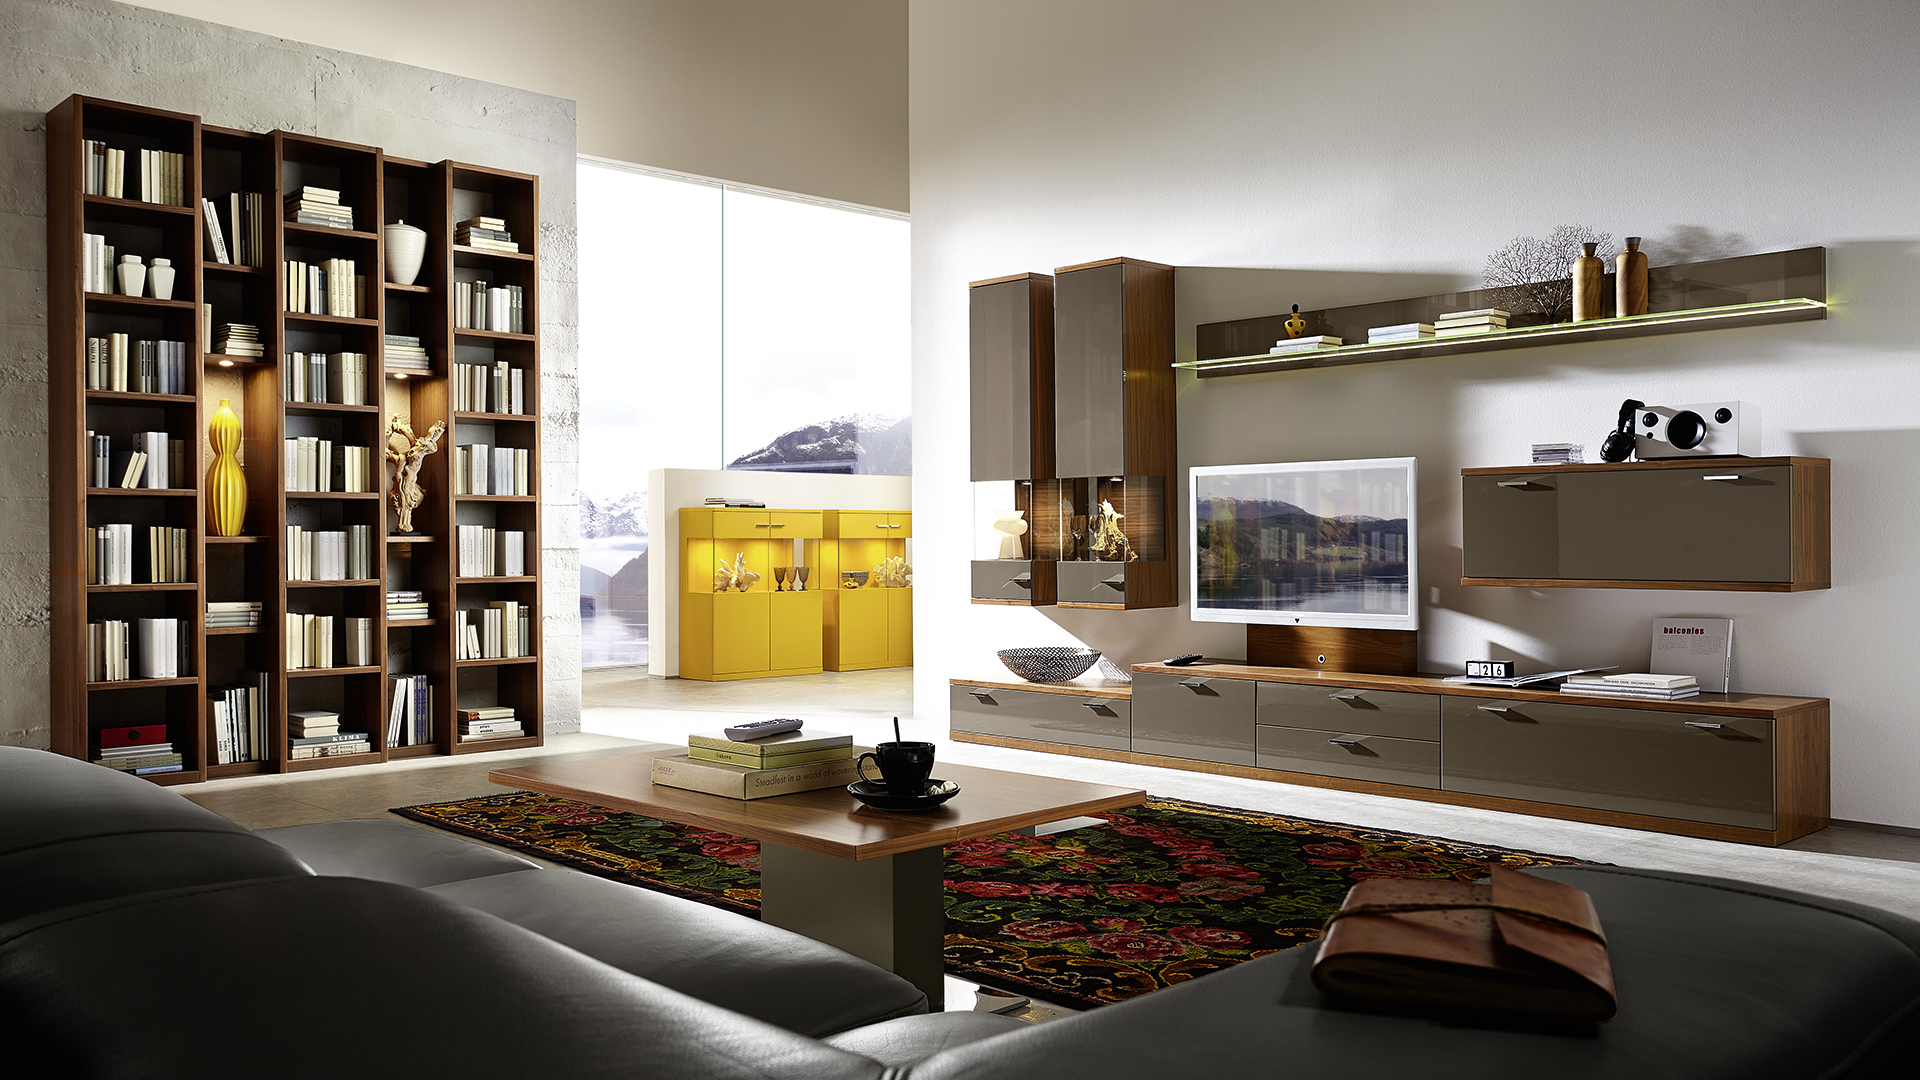 Modulární systém pro navrhování úložného prostoru knih v obývacím pokoji